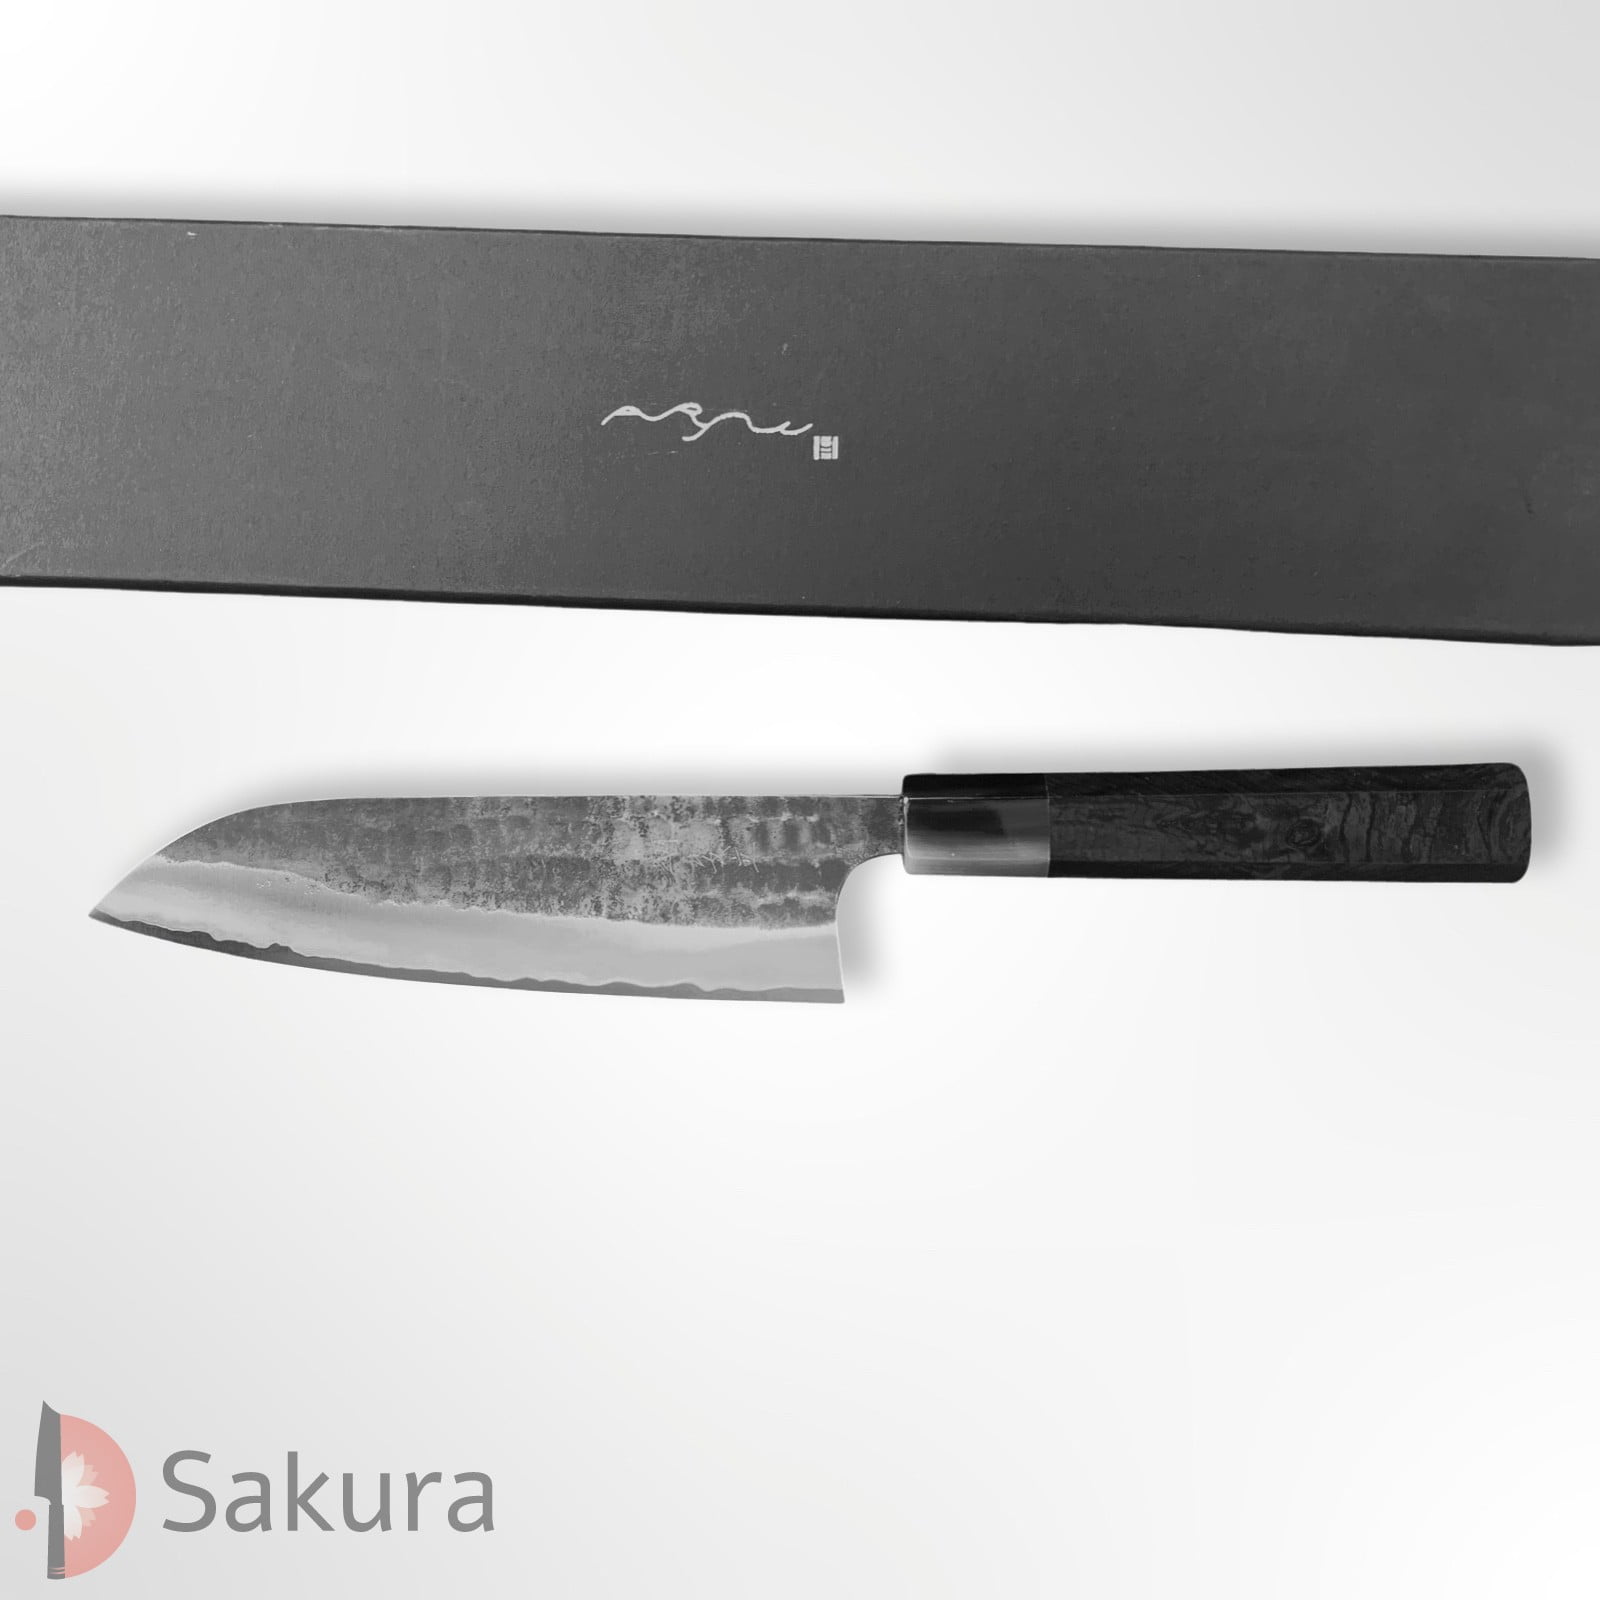 סכין רב-תכליתית סָנטוֹקוּ 165מ״מ מחושלת בעבודת יד 3 שכבות: פלדת פחמן יפנית מתקדמת מסוג Aogami Super עטופה פלדת אל-חלד גימור קורואוצ׳י שחור עם ריקוע פטיש קטסושיקה אנריו יפן – SKANRYASKTSANT16523